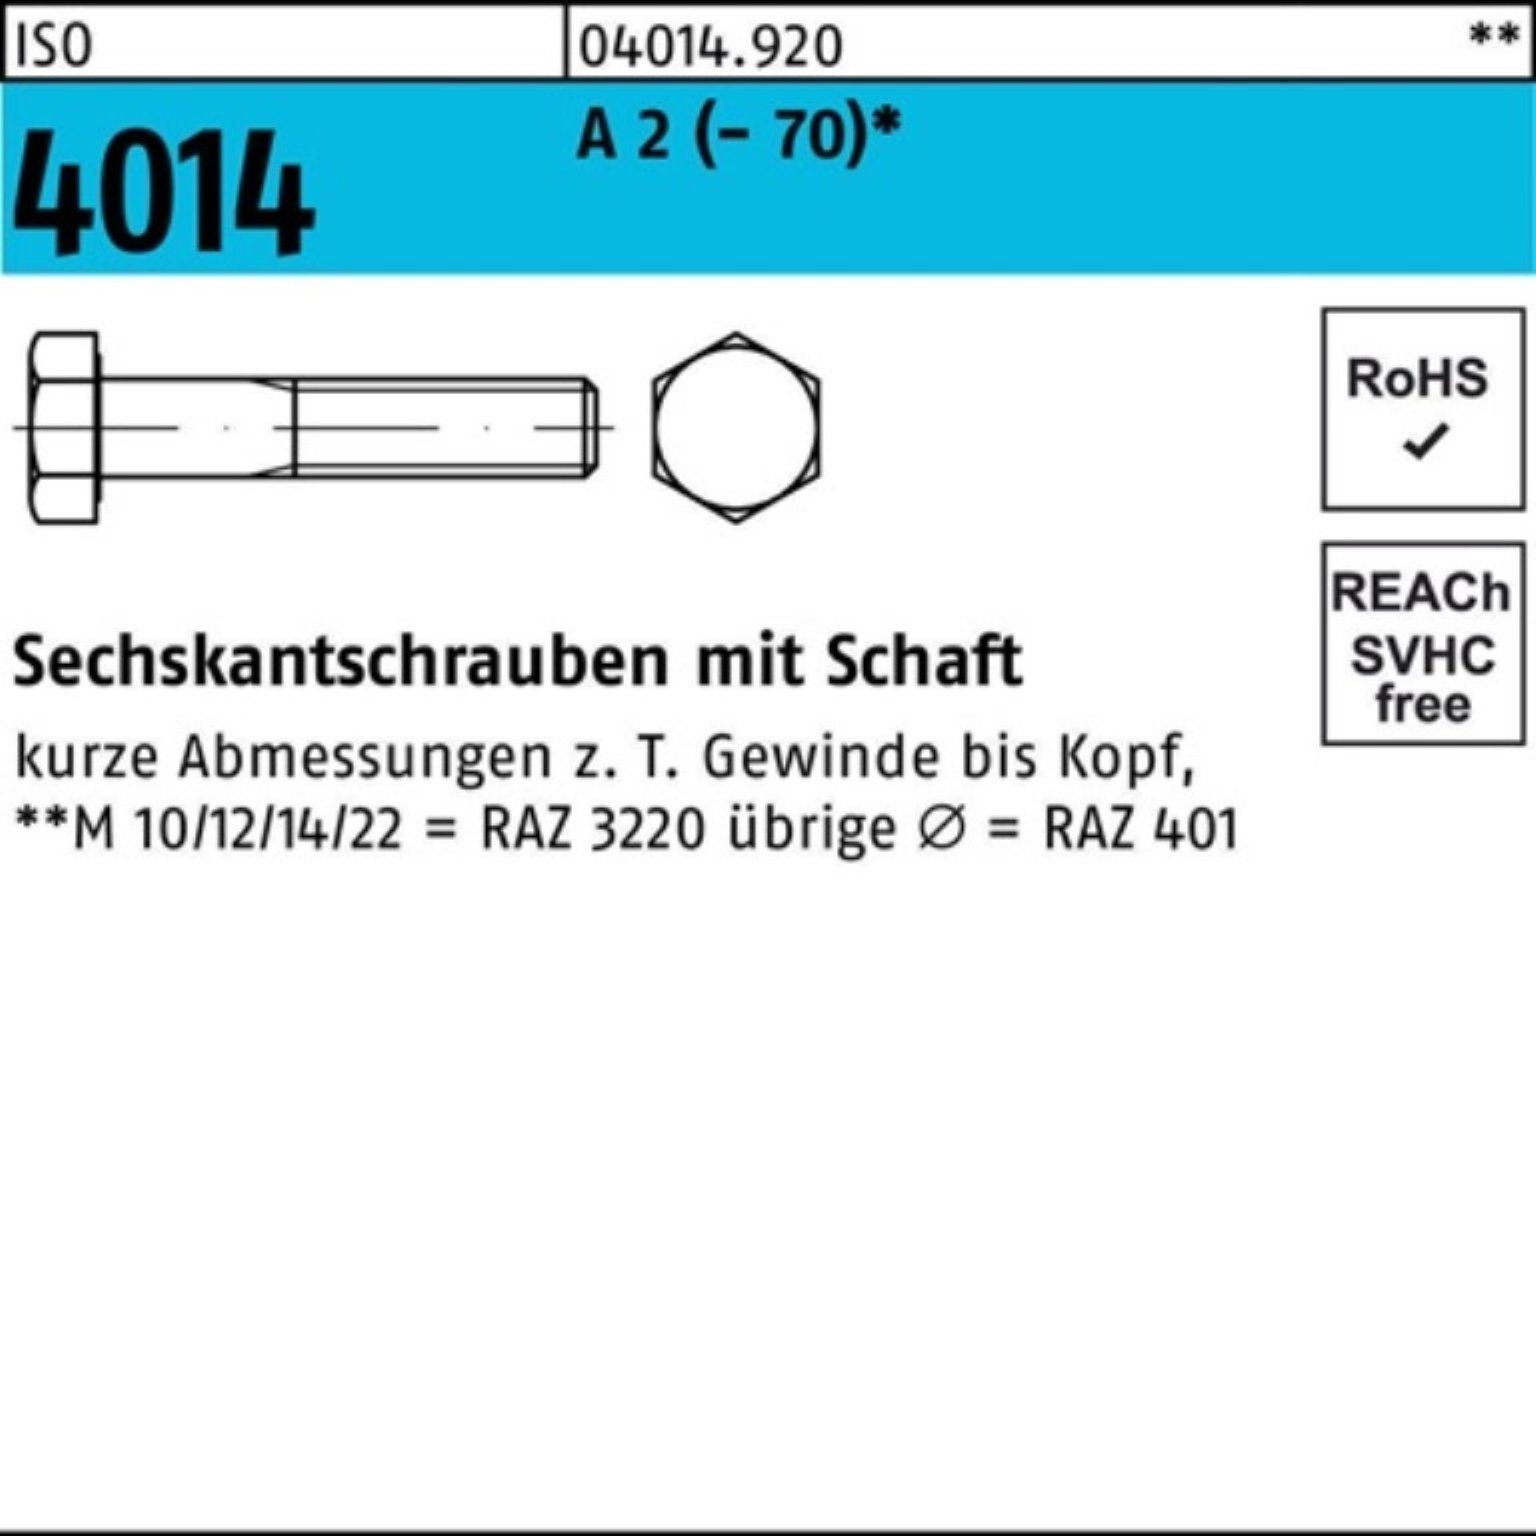 Bufab Sechskantschraube 100er Pack Sechskantschraube ISO 4014 Schaft M27x 100 A 2 (70) 1 St | Schrauben